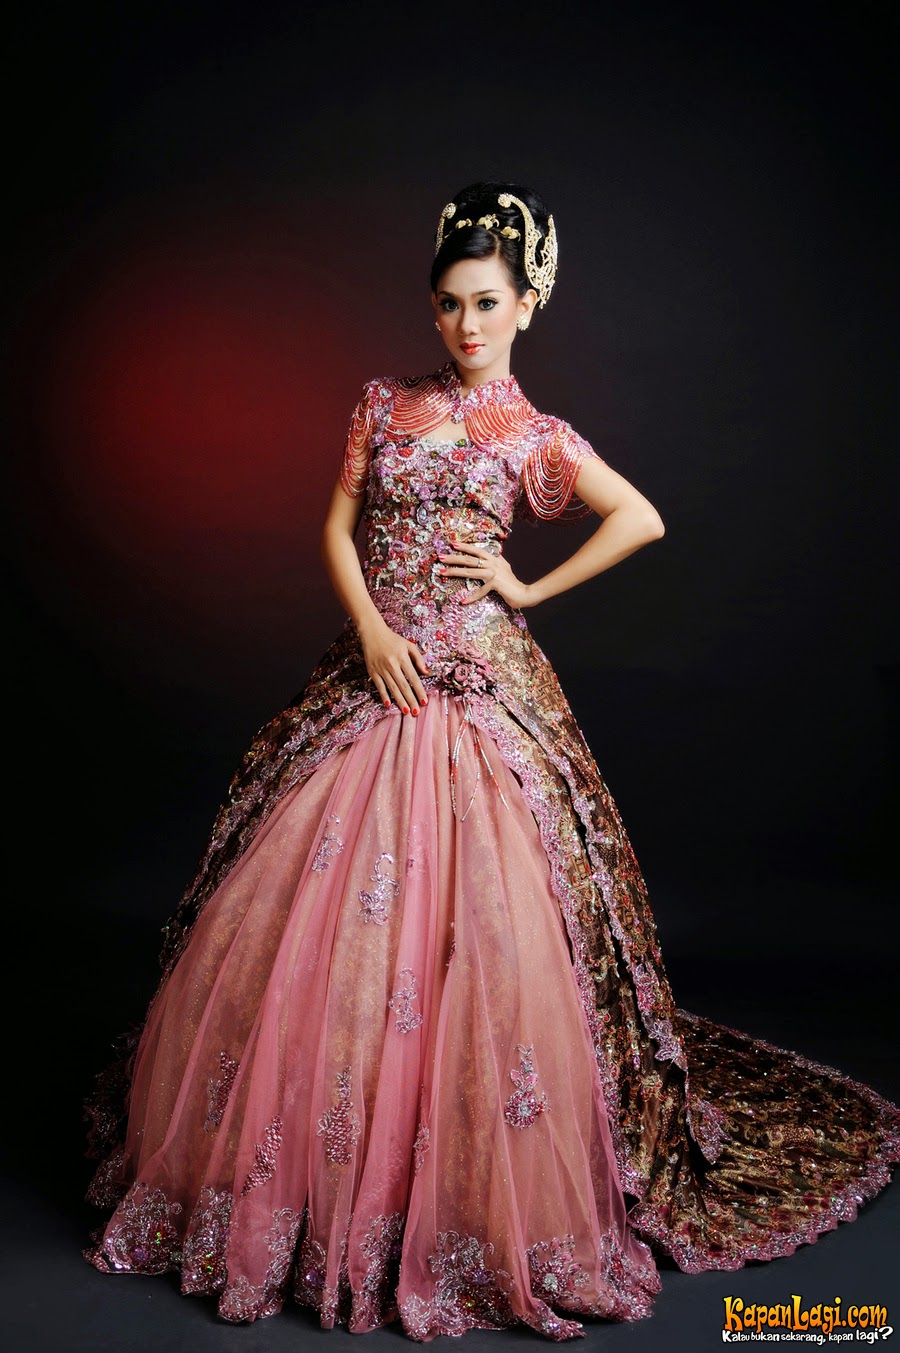 Kumpulan Foto Model  Baju Busana Kebaya Batik  Trend Baju 